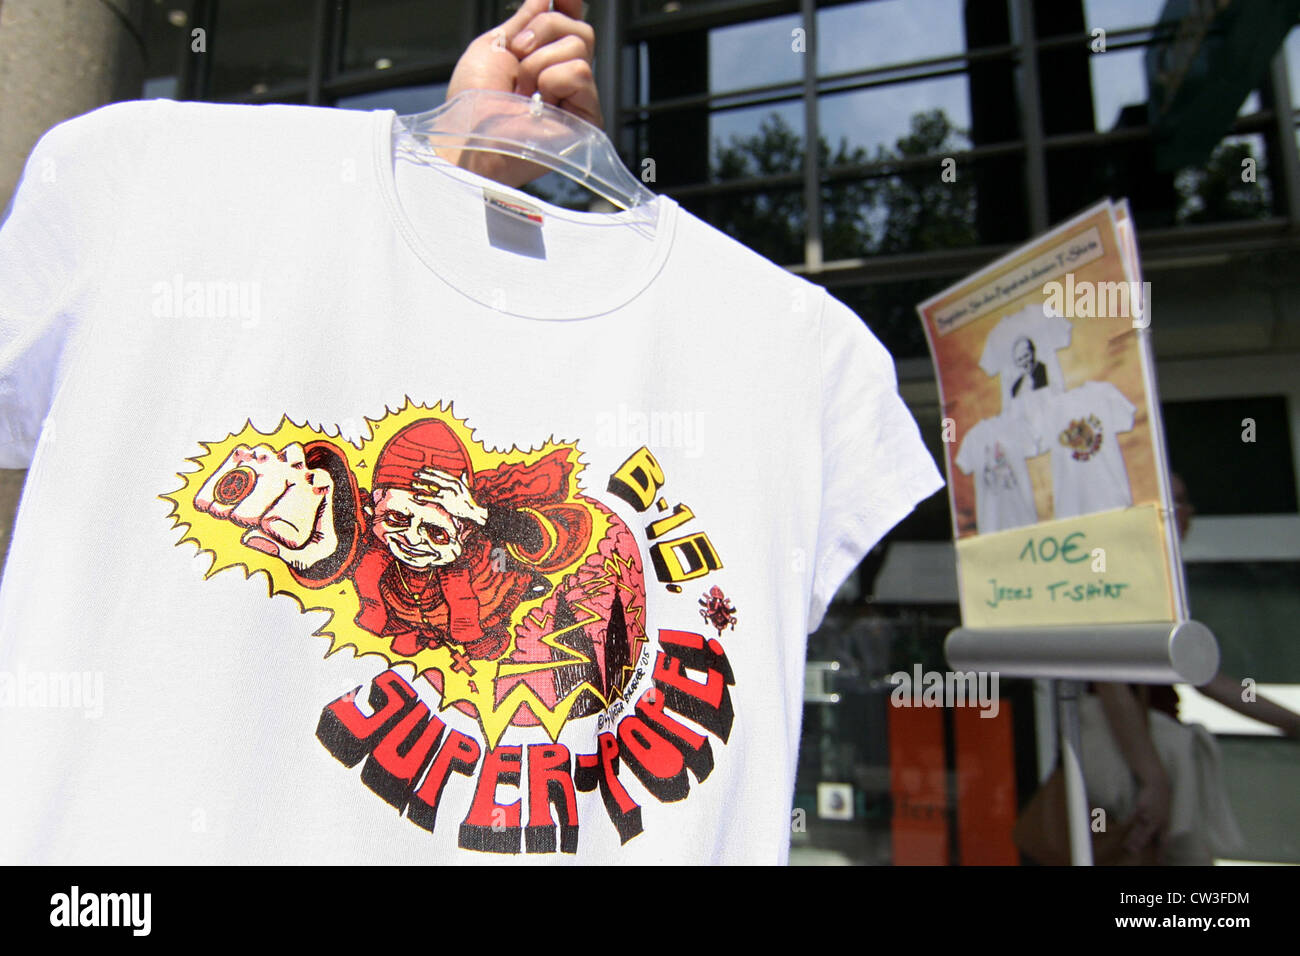 Kunstvoll bedrucktes T-shirt mit einer Karikatur von Papst Benedict XVI  Stockfotografie - Alamy